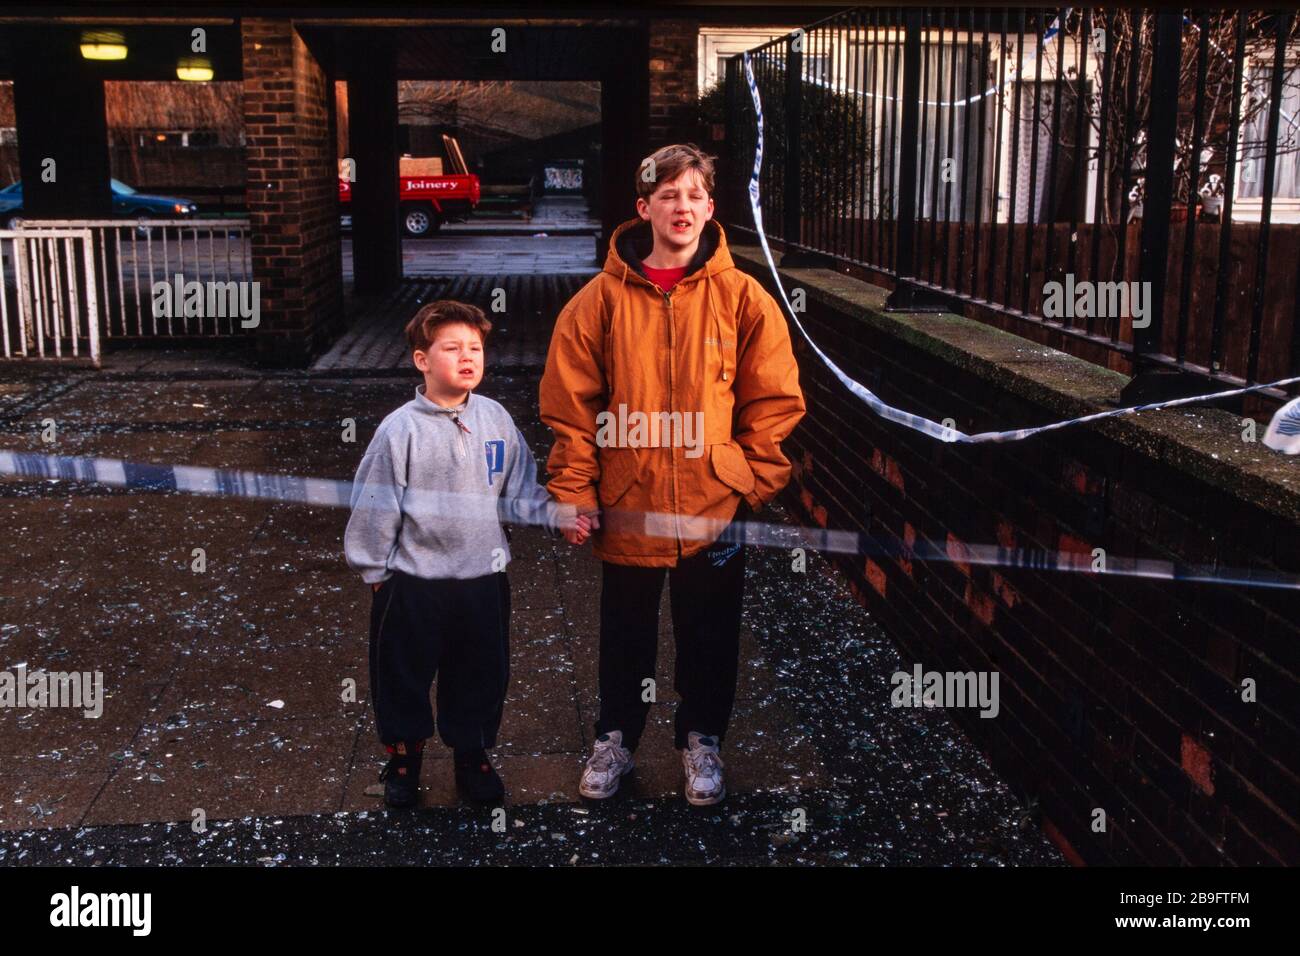 Les enfants locaux en retard de croissance se trouvent près d'une ligne de police le jour suivant que l'IRA a explosé une puissante bombe à camion à South Quay, Londres Docklands, le 9 février 1996, tuant deux personnes et causant des dégâts d'une valeur de 150 millions de livres sterling. Banque D'Images